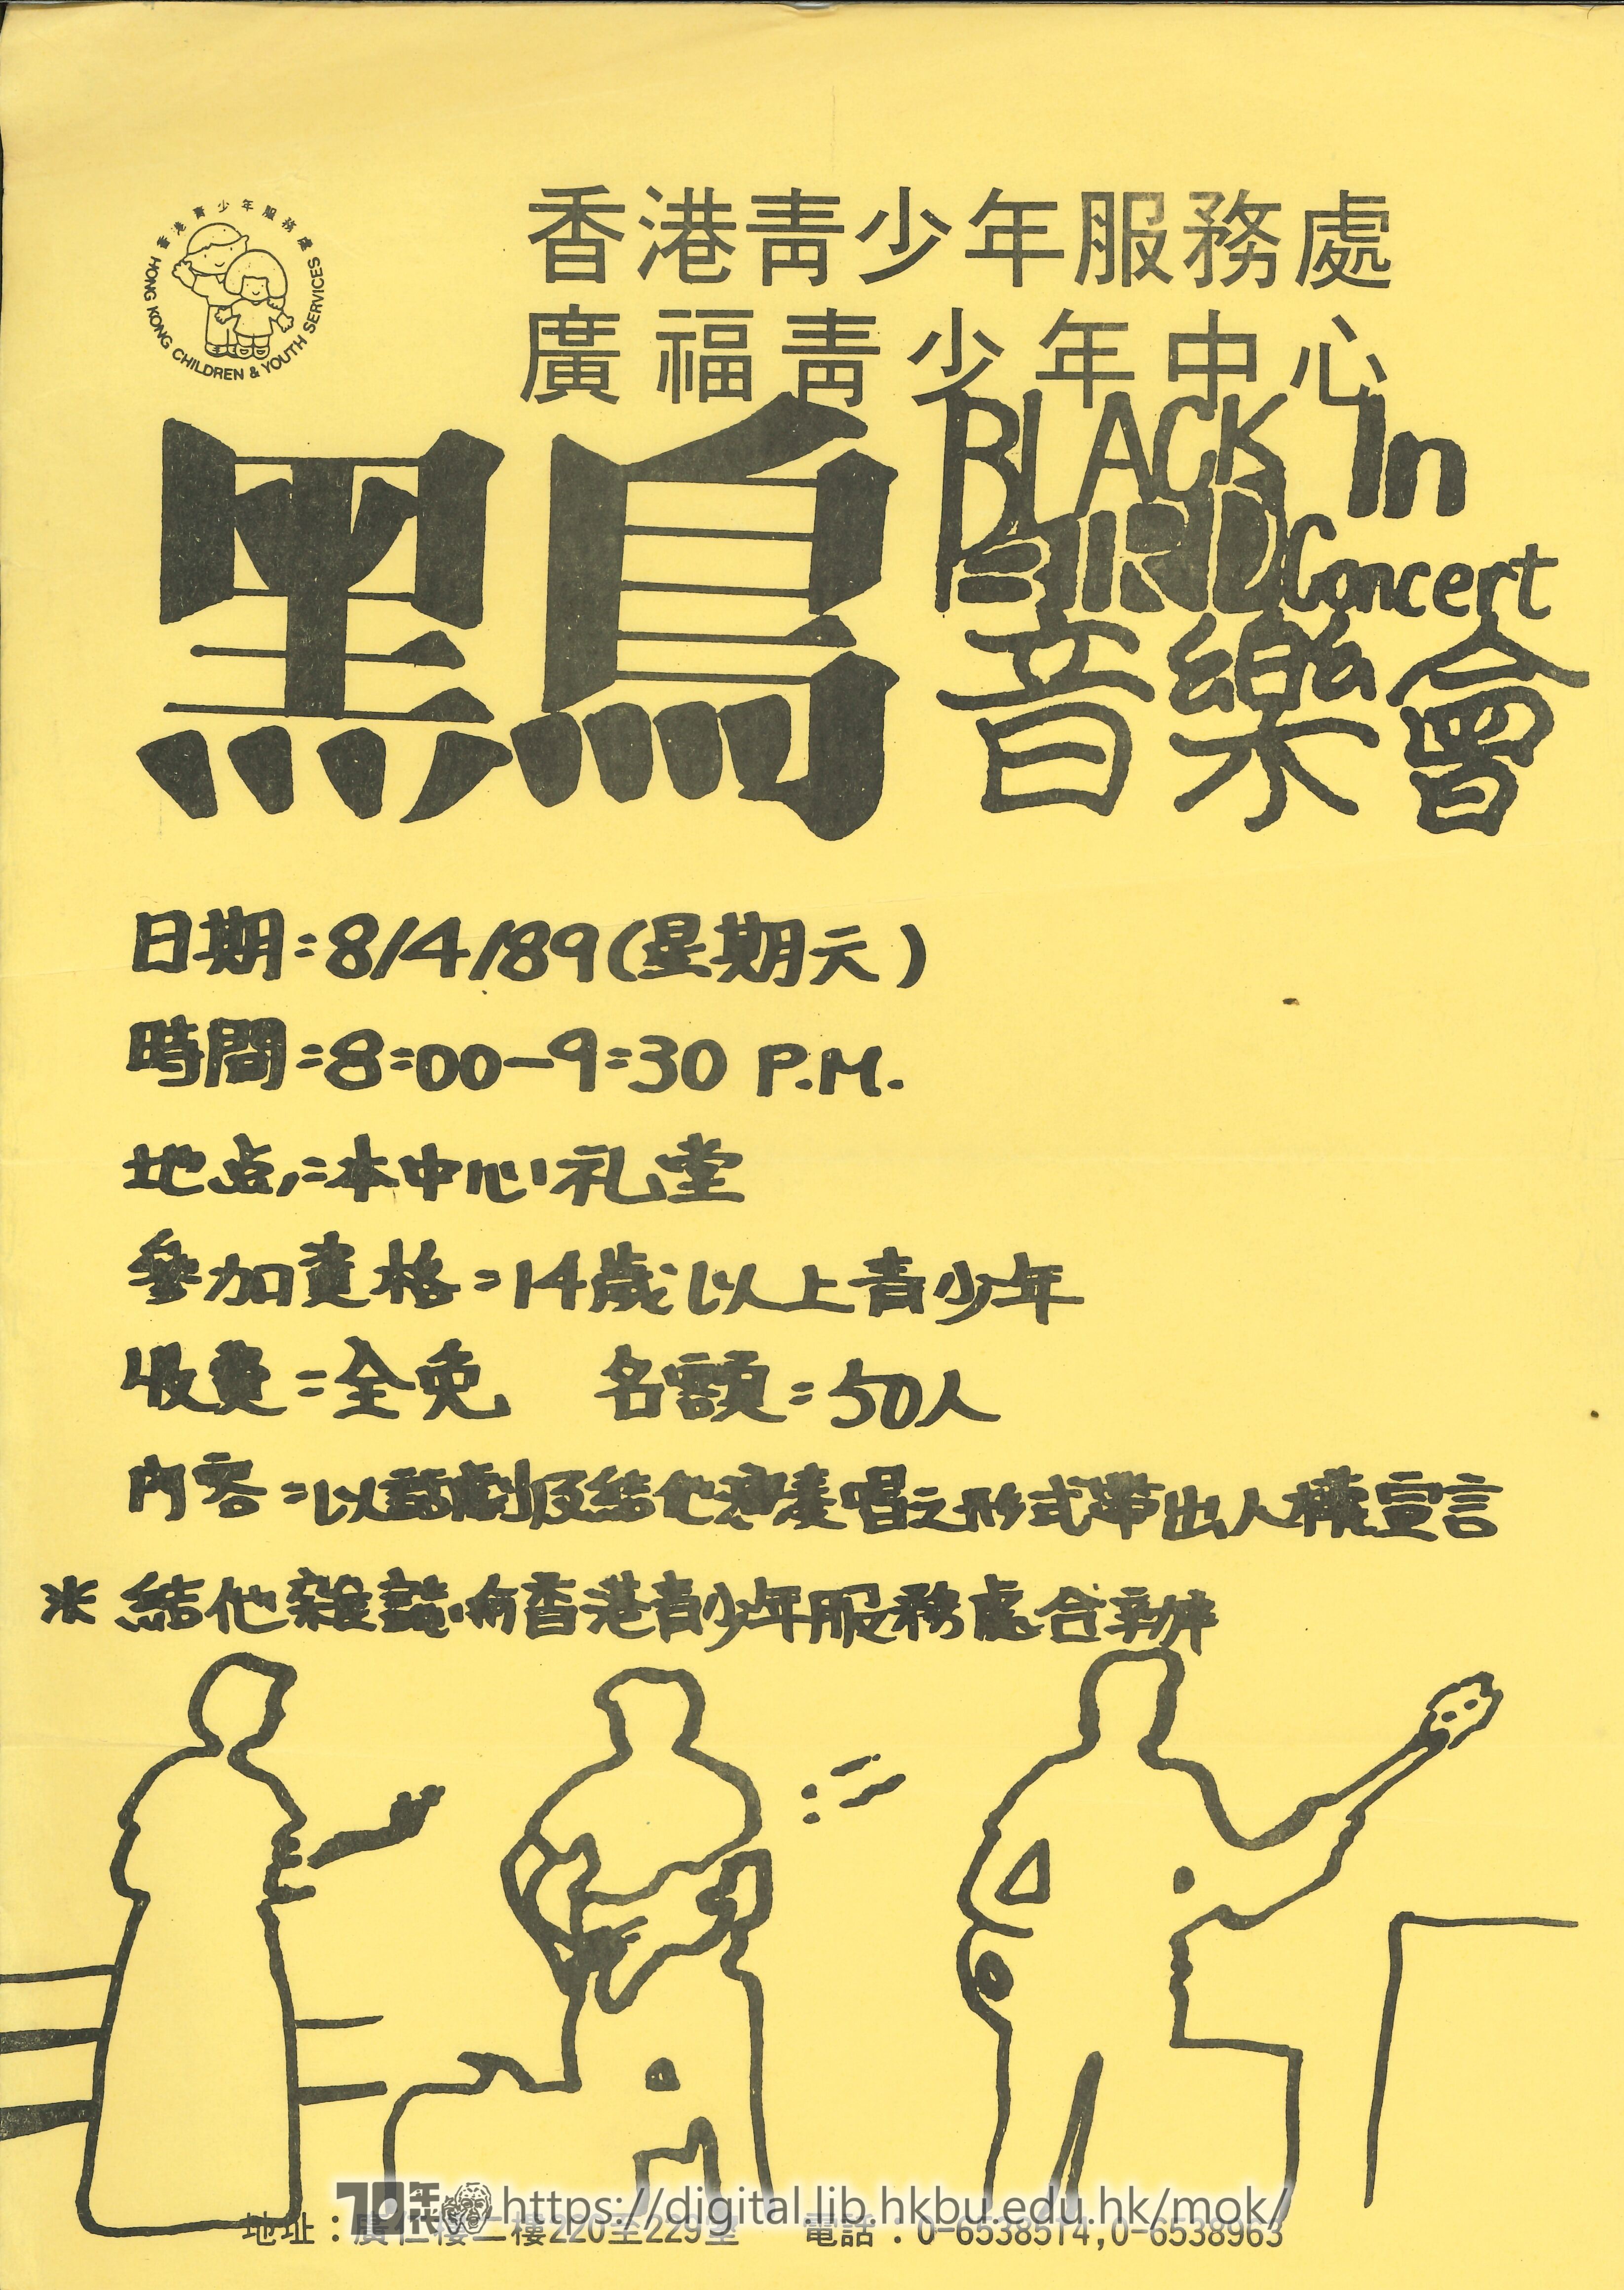 Blackbird  Poster of Blackbird concert  